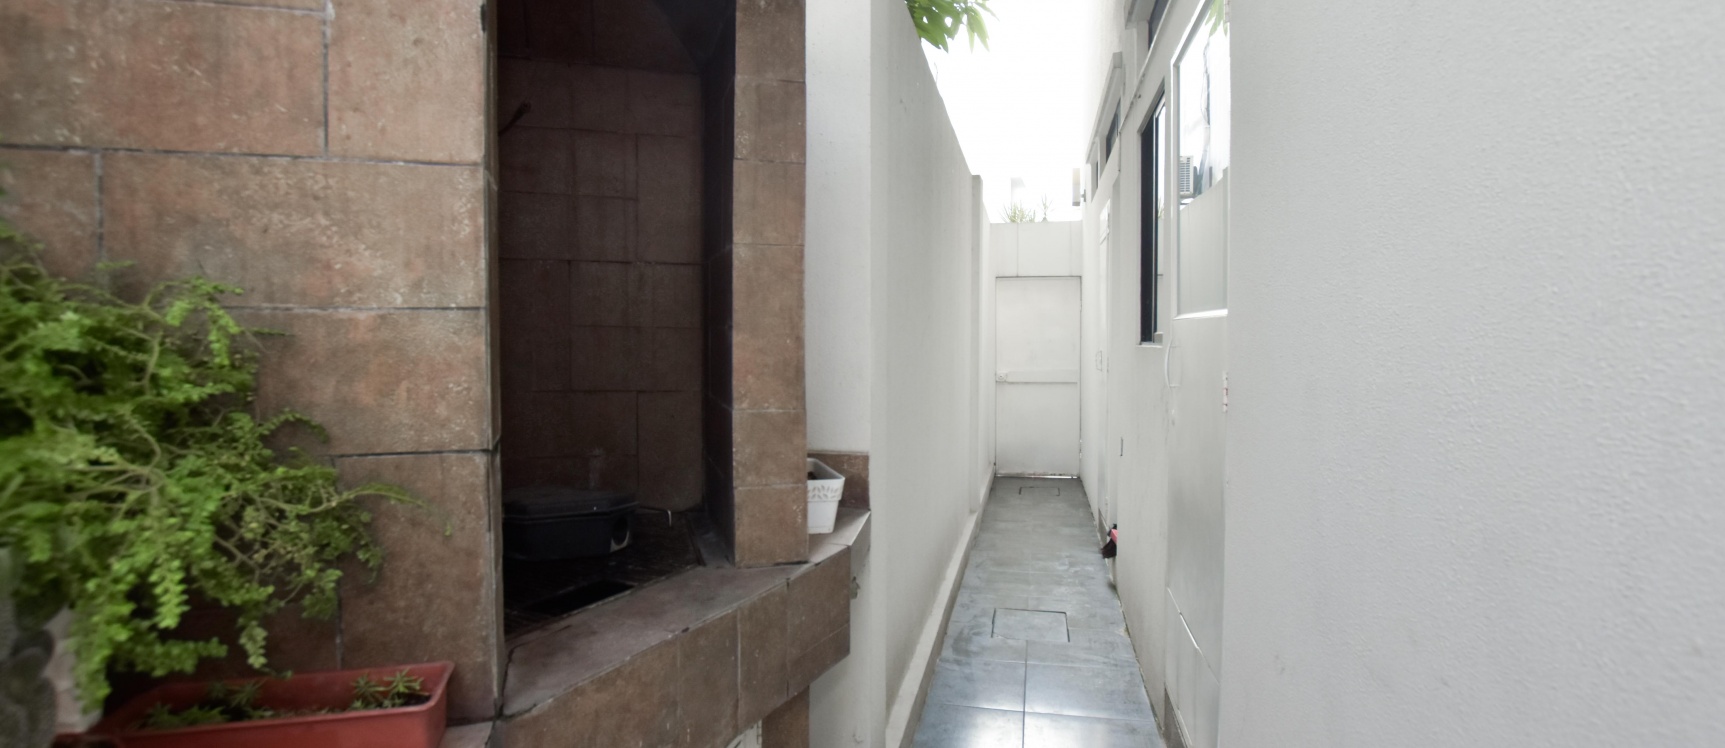 GeoBienes - Casa en venta en Vía Samborondón km 2.5 - Urb. Bouganville - Plusvalia Guayaquil Casas de venta y alquiler Inmobiliaria Ecuador